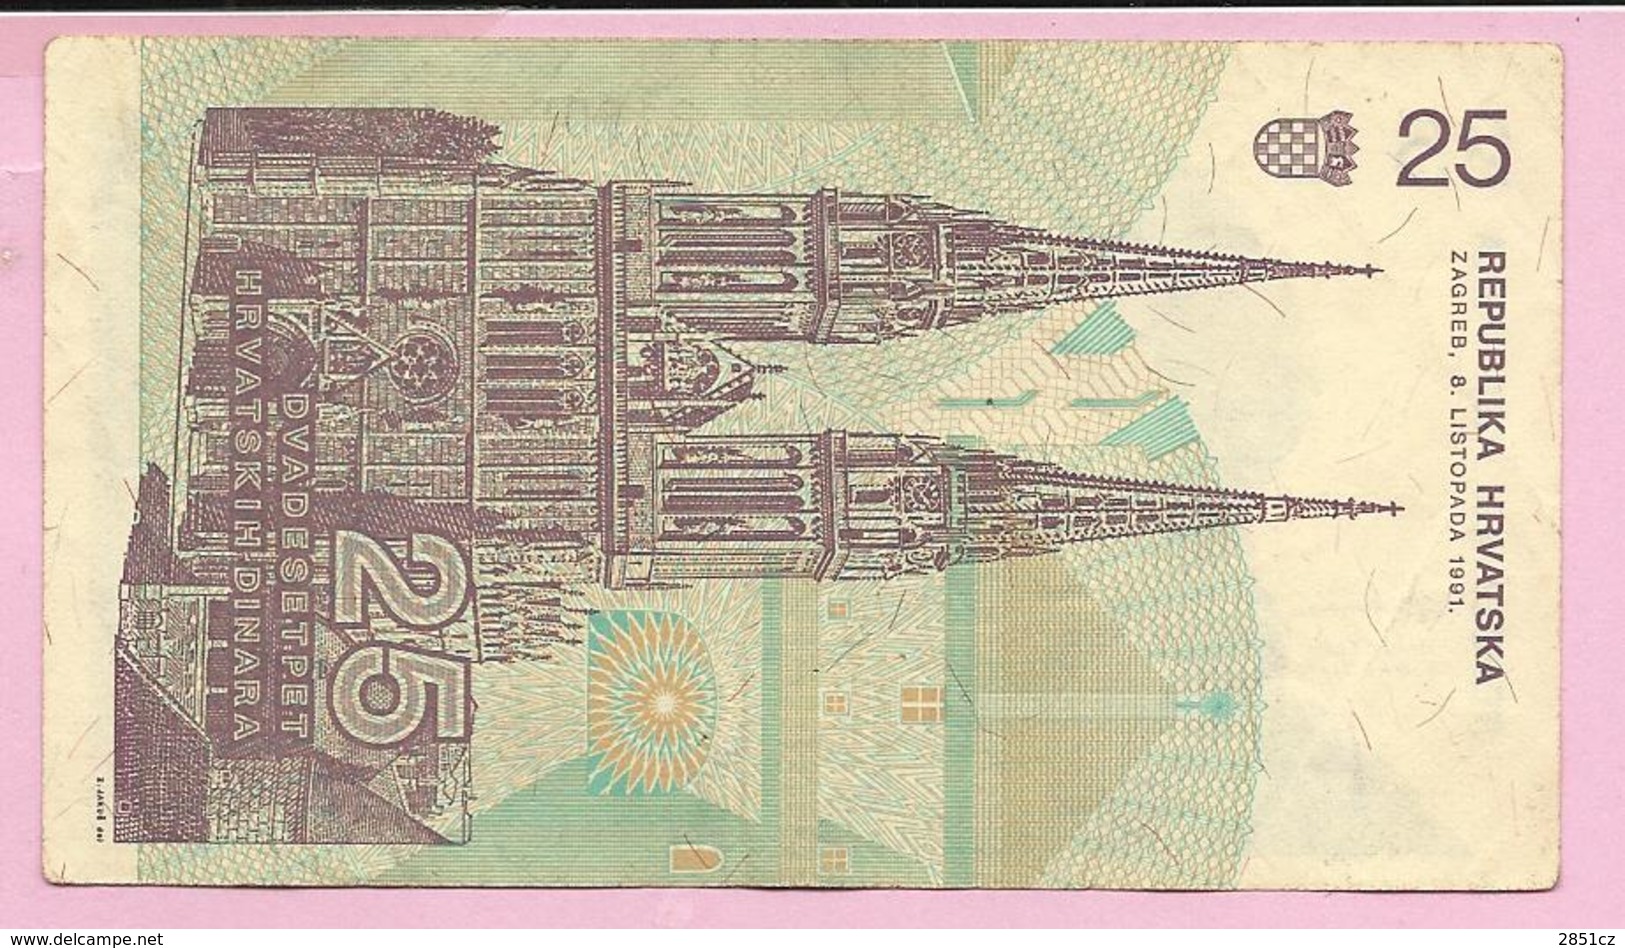 Banknote - 25 HRD, 1991., Croatia, No 2150863709 - Croatia